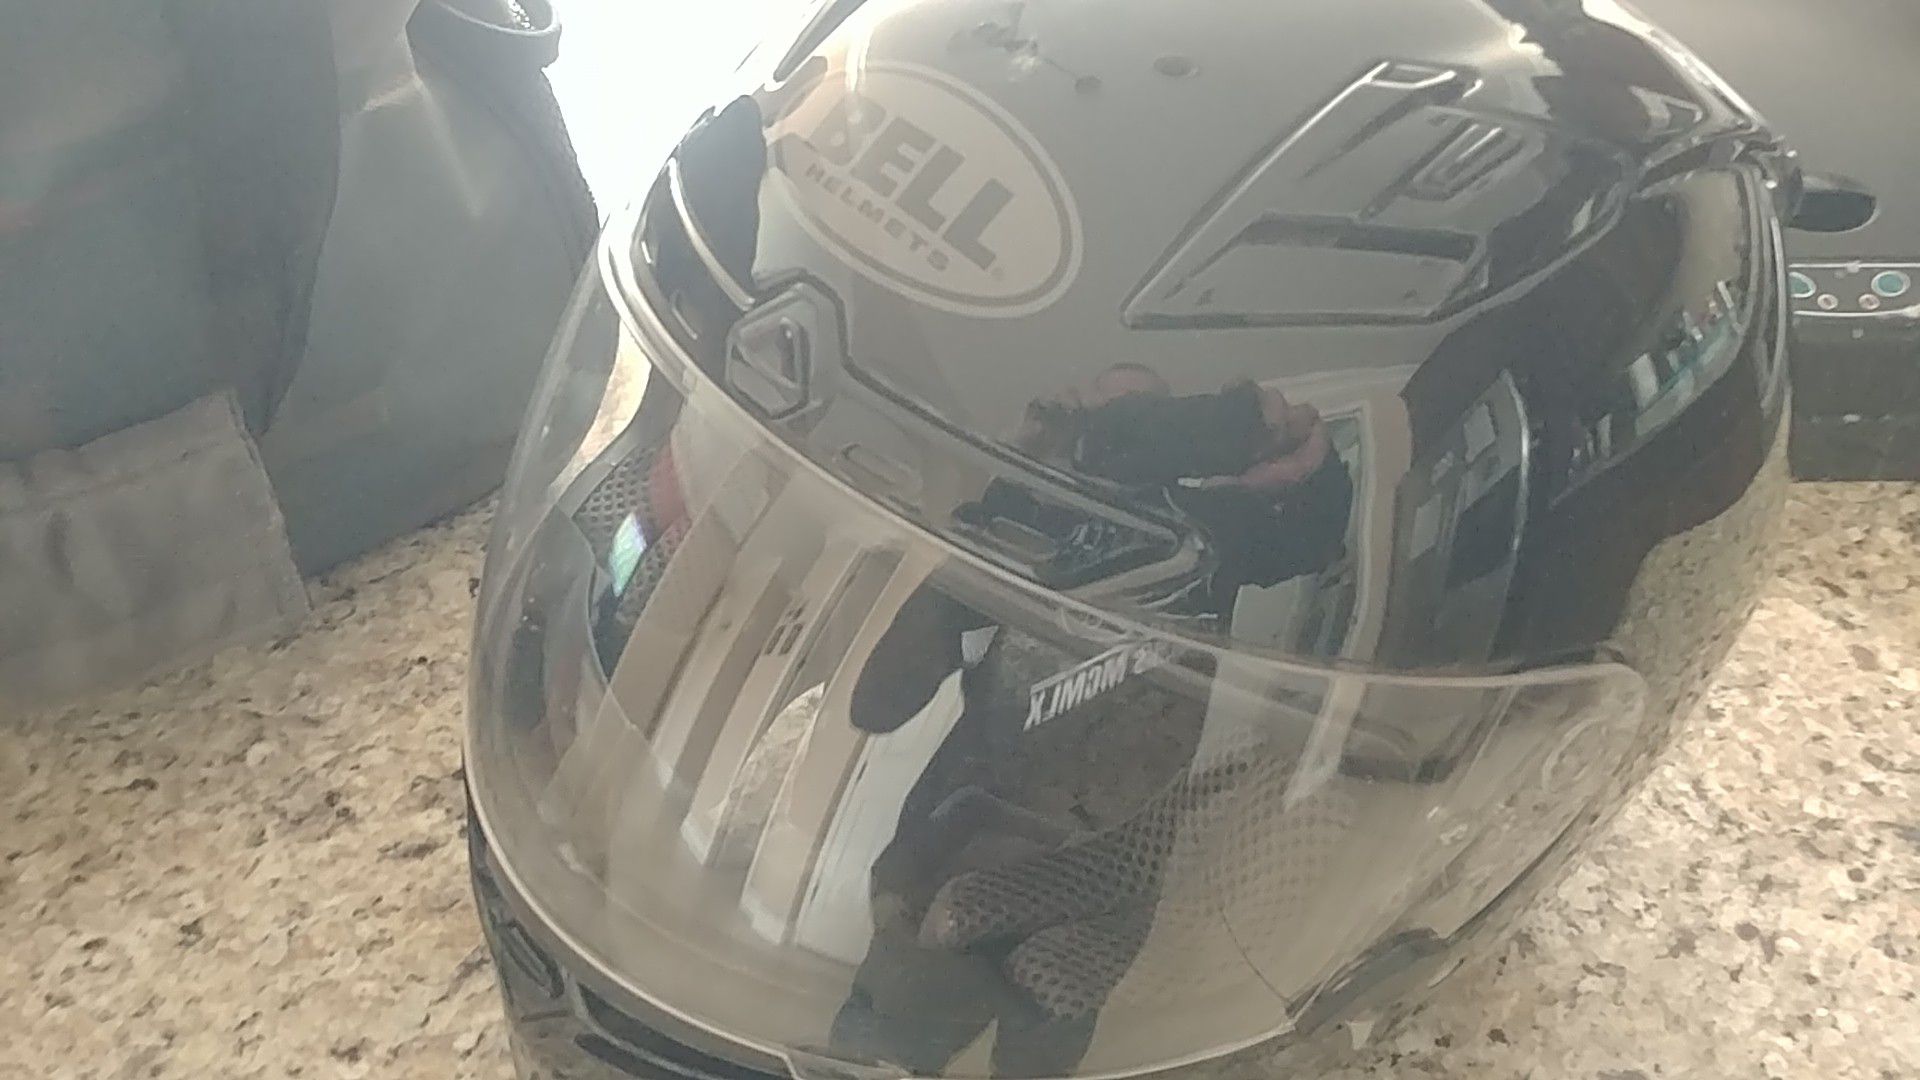 Bell full face helmet